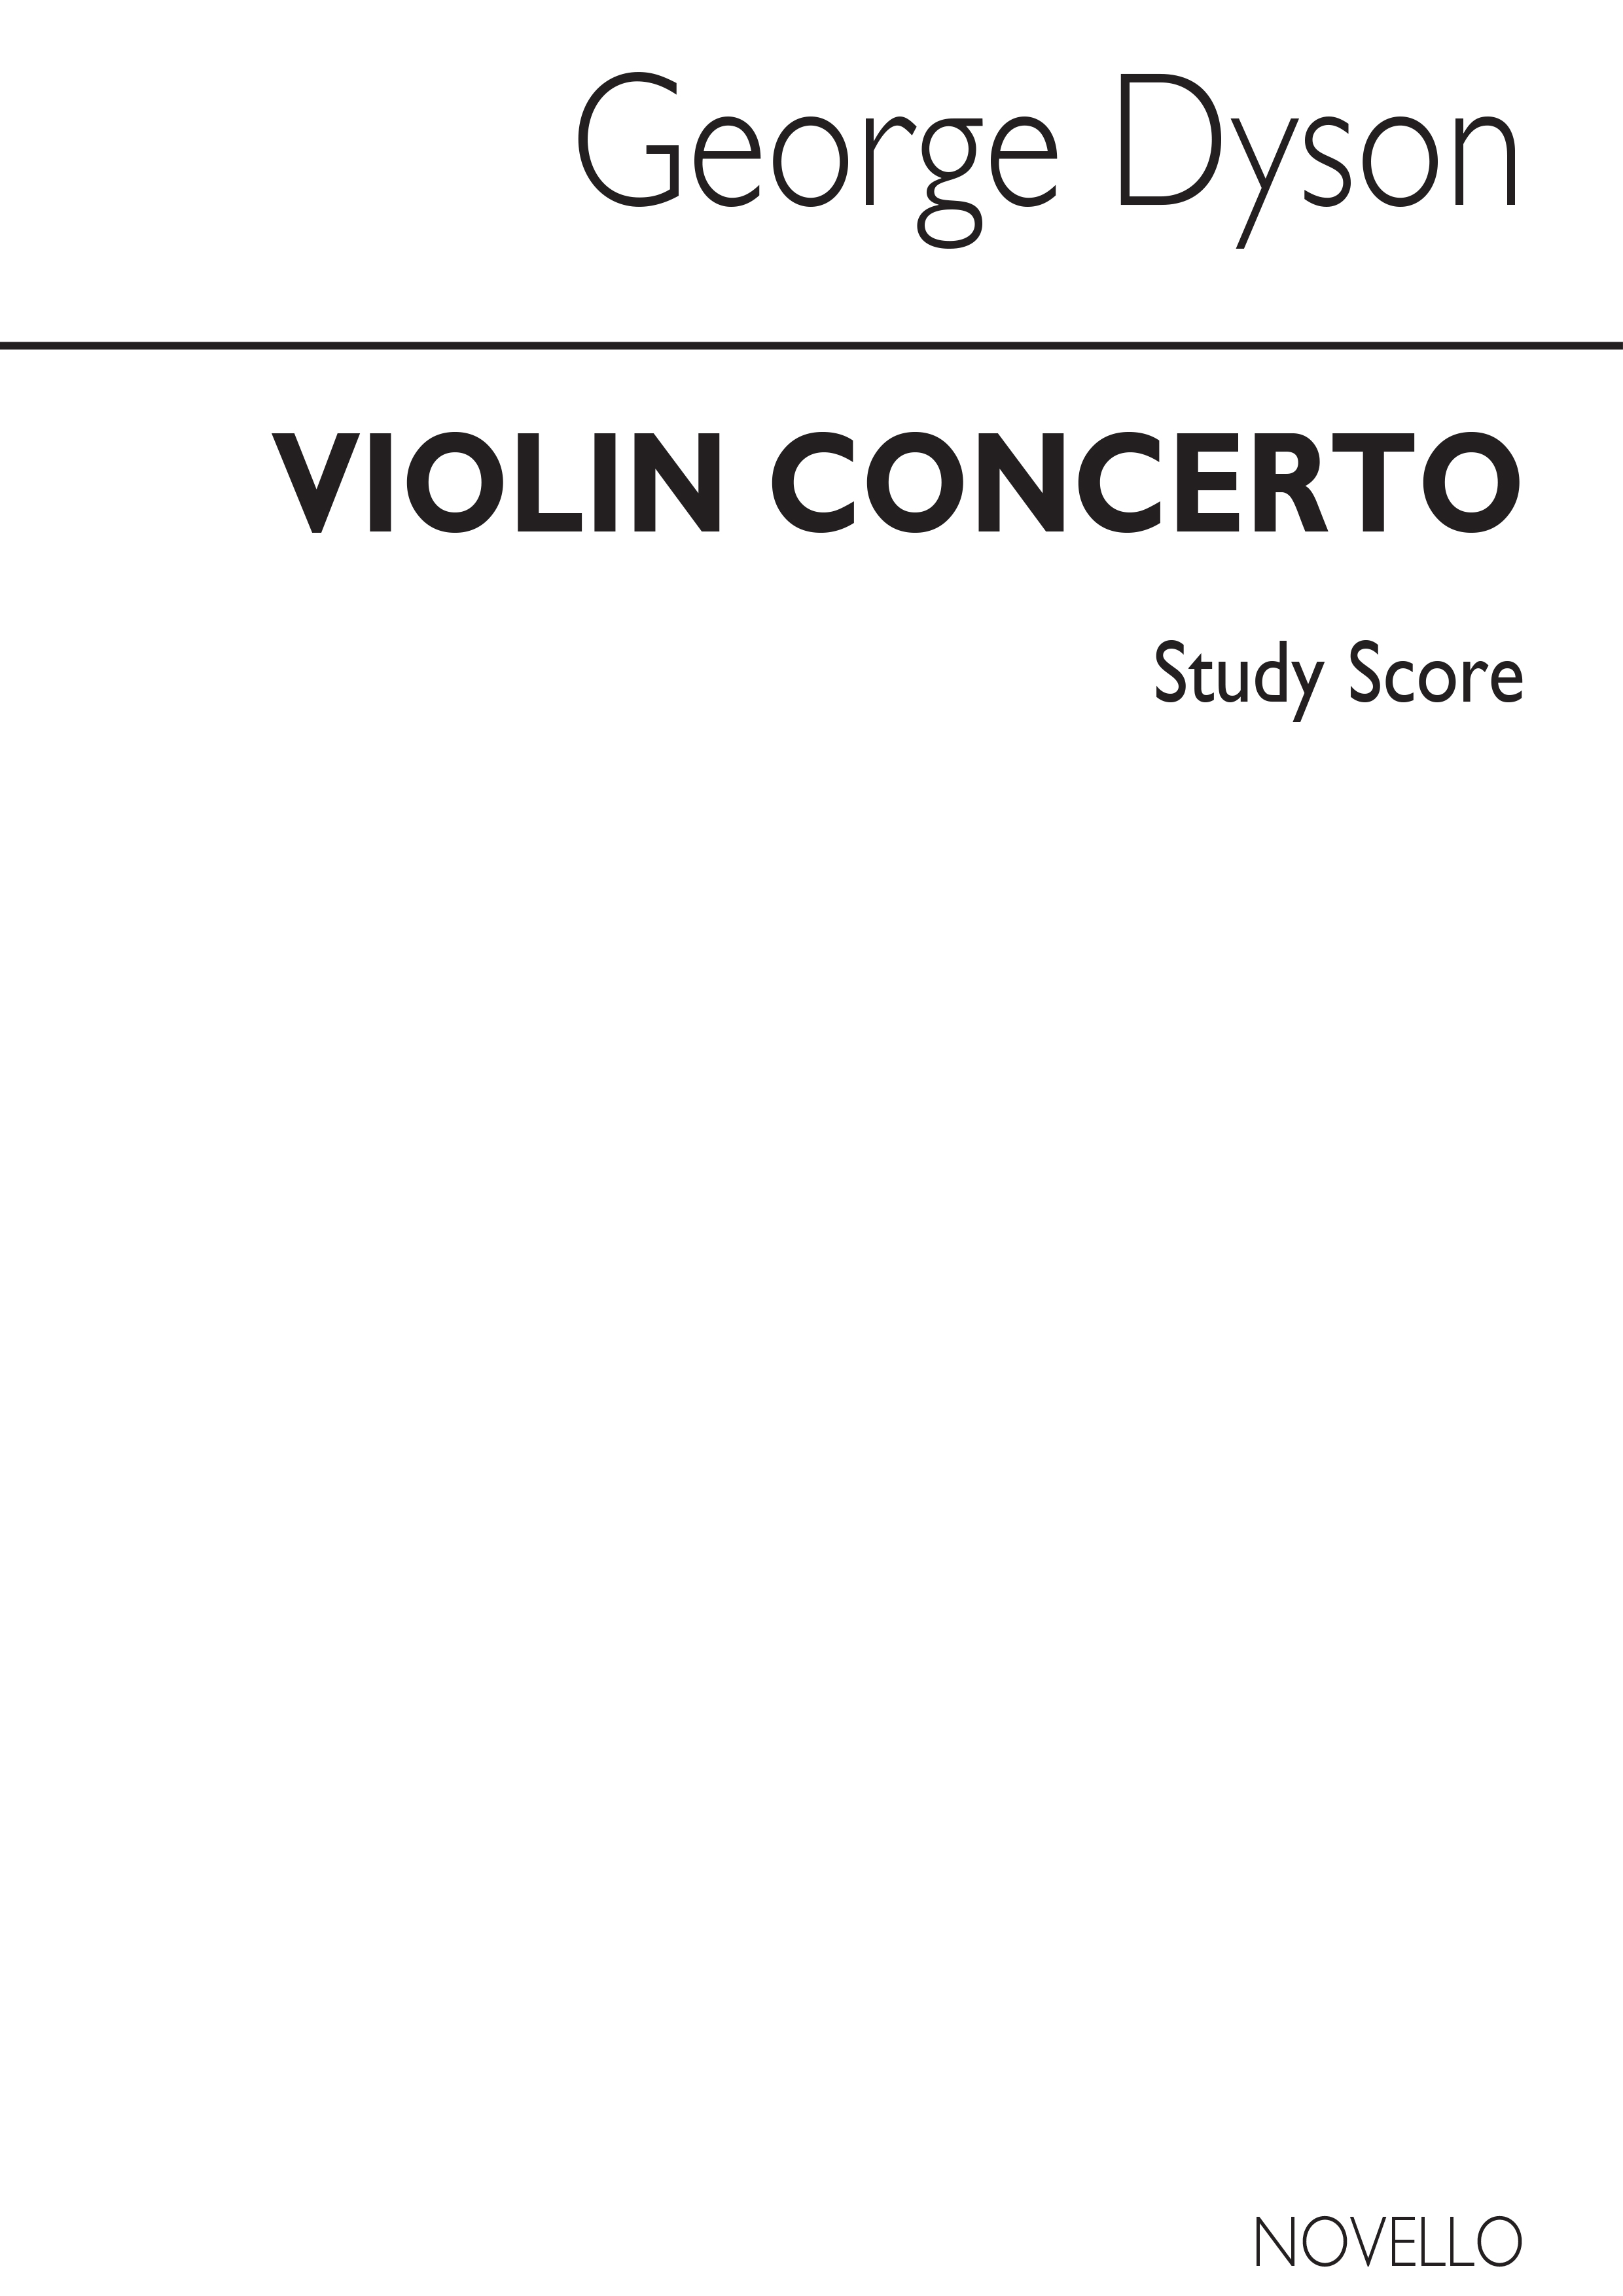 George Dyson: Violin Concerto (Study Score)